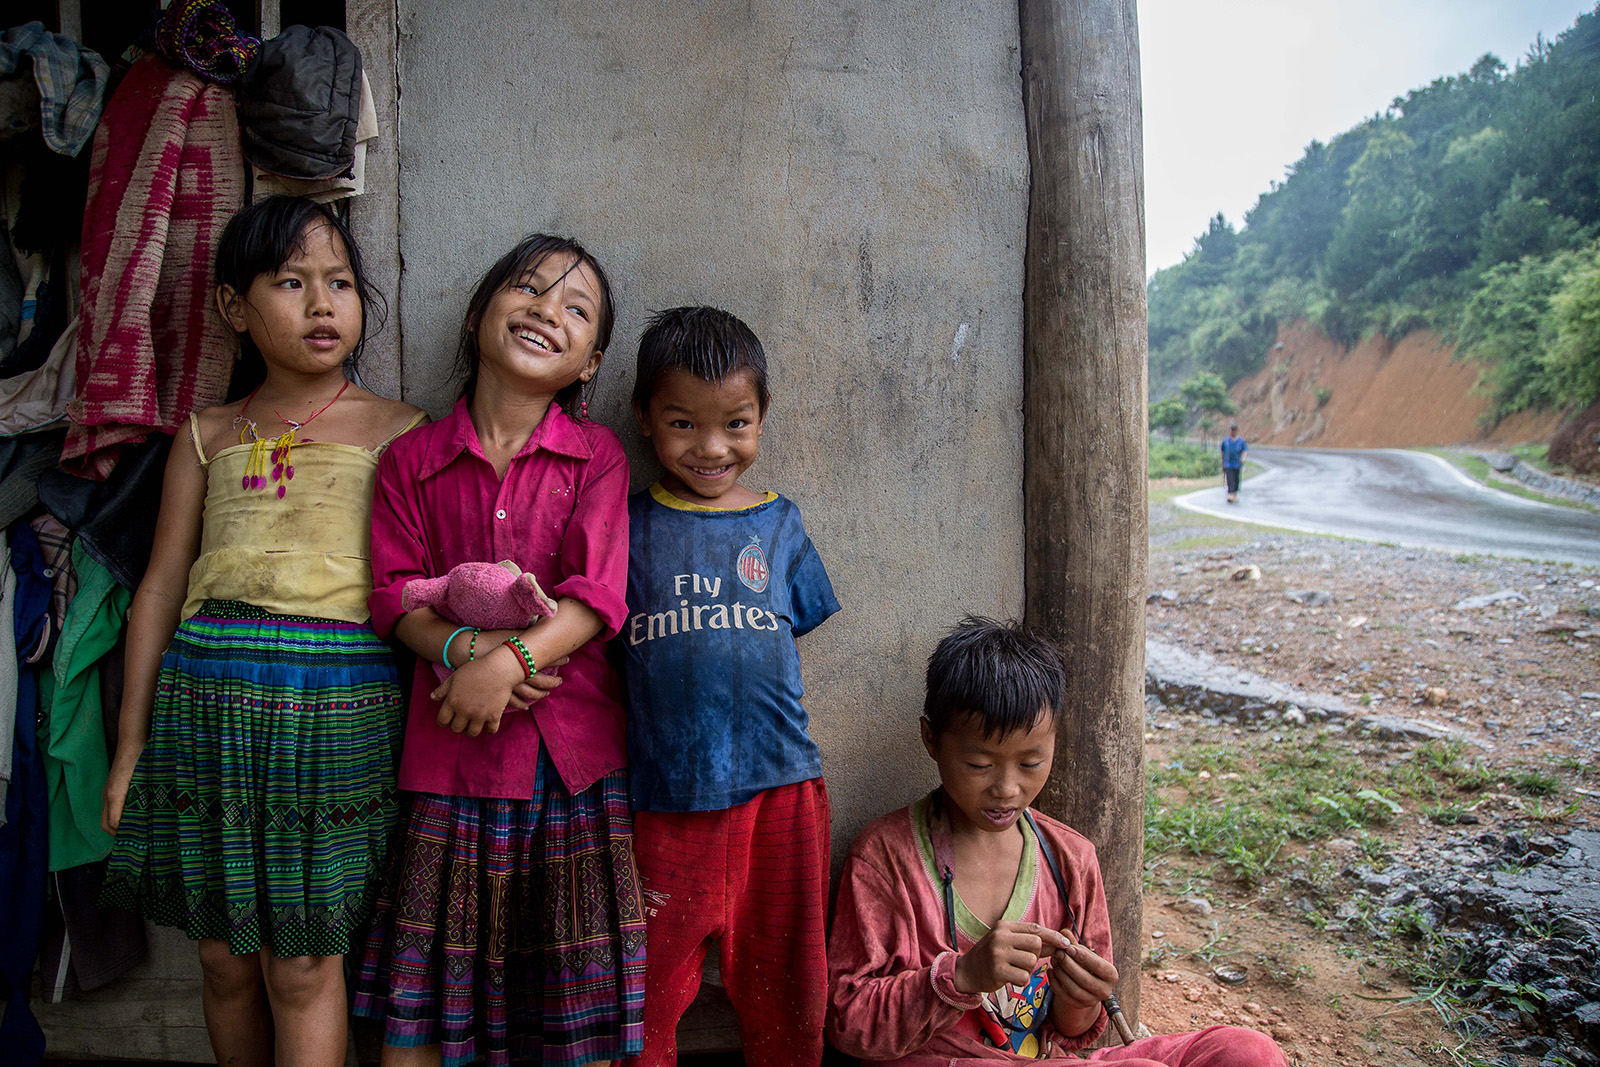 voyage pour découvrir la vie du Nord-Vietnam